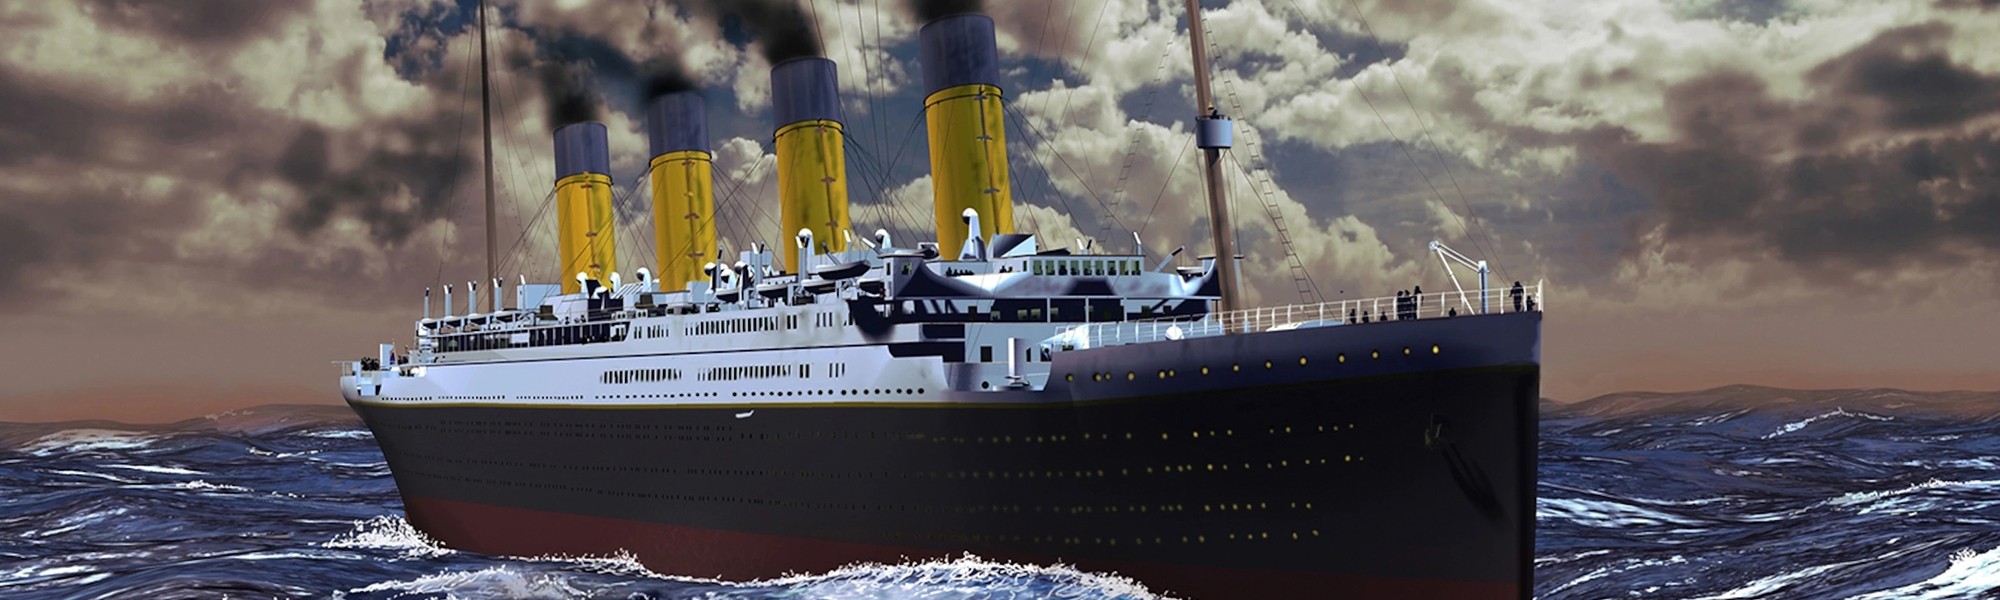 Titanic Dataset - EDA - Ramin F.